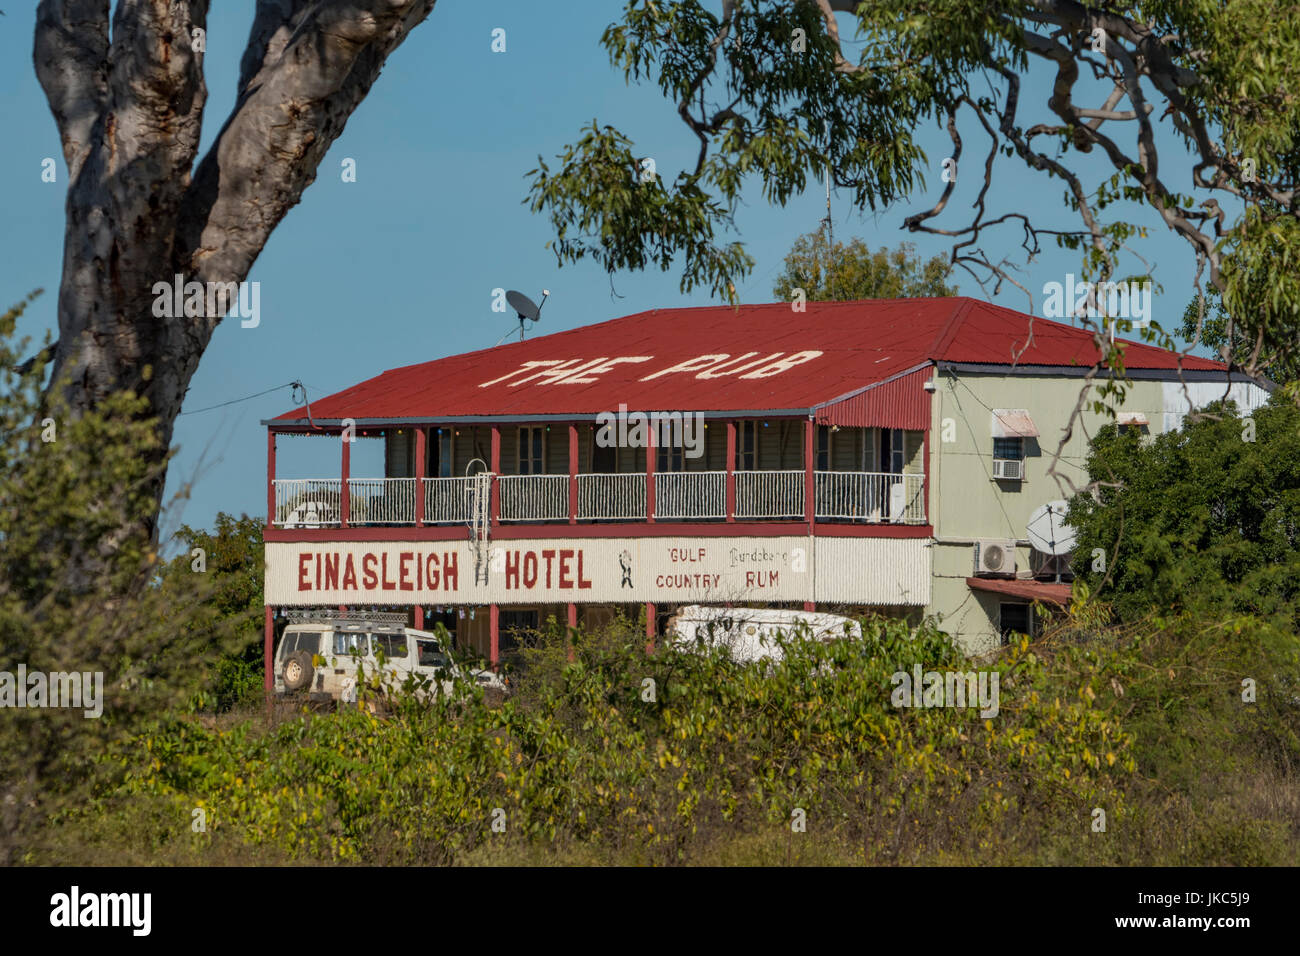 Einasleigh Hotel, Einasleigh, Queensland, Australia Stock Photo